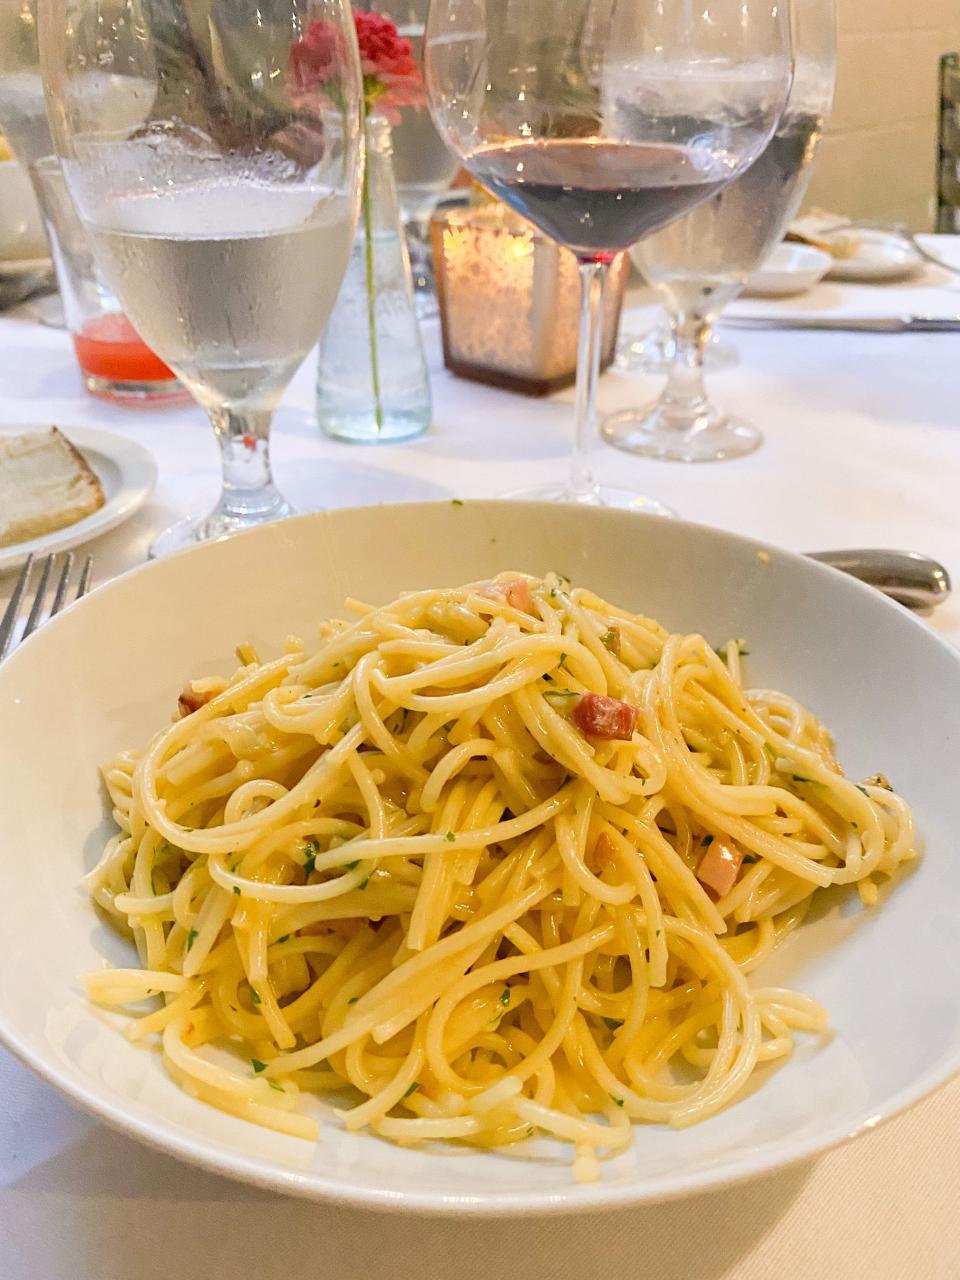 Spaghetti alla Carbonara at Bari Ristorante e Enoteca. Bari makes its pasta from scratch in house.